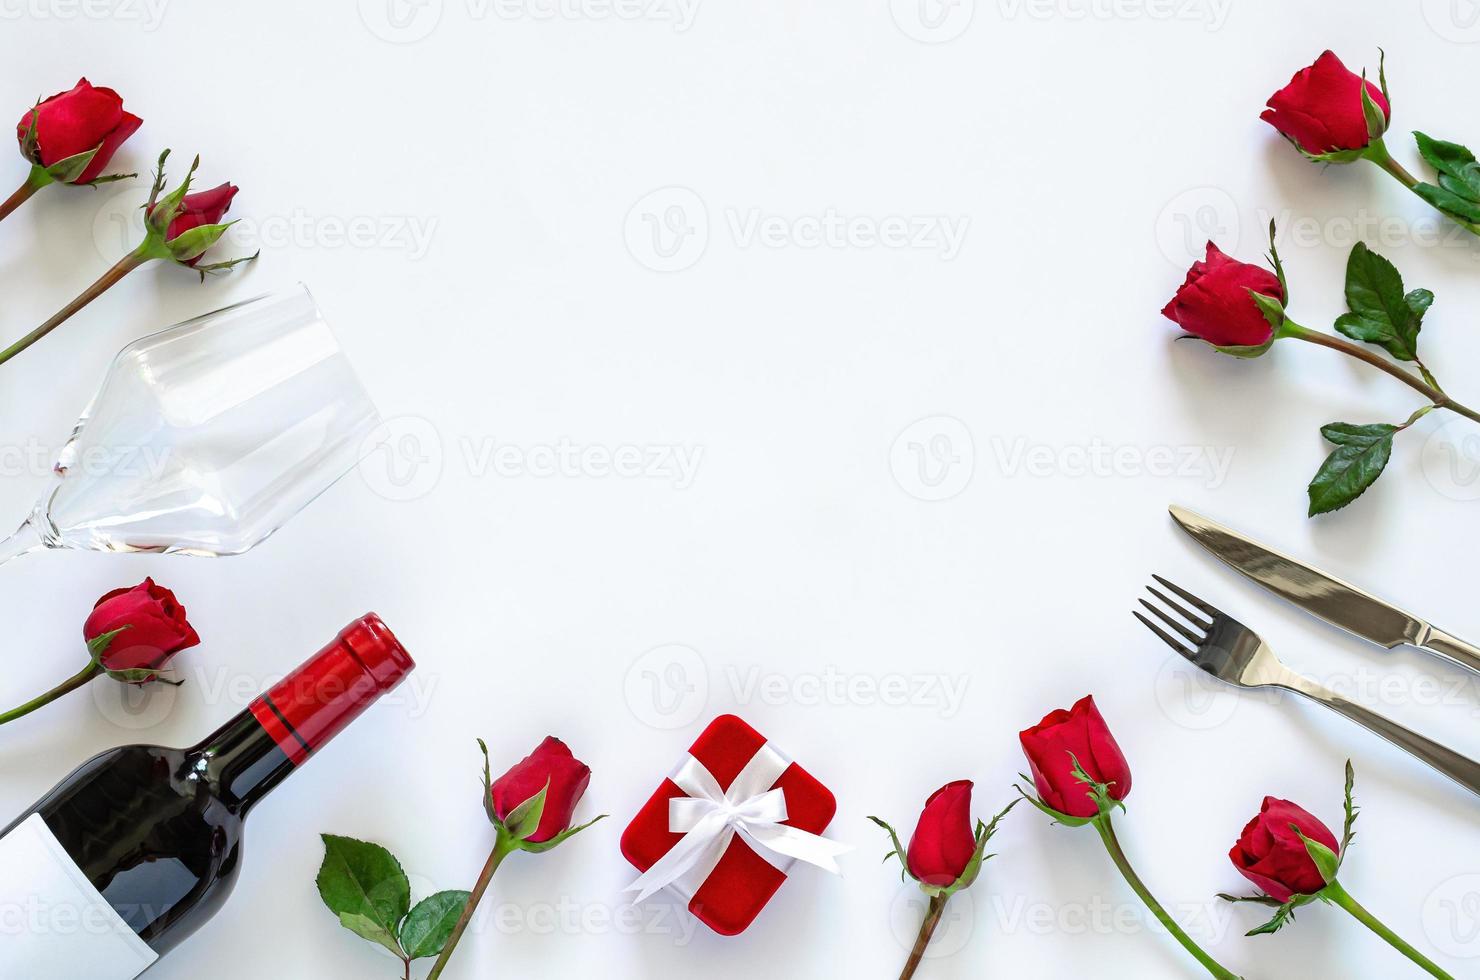 jantar dos namorados em fundo branco com caixa de presente vermelha, uma garrafa de vinho tinto, vidro, faca, garfo e rosas vermelhas. foto